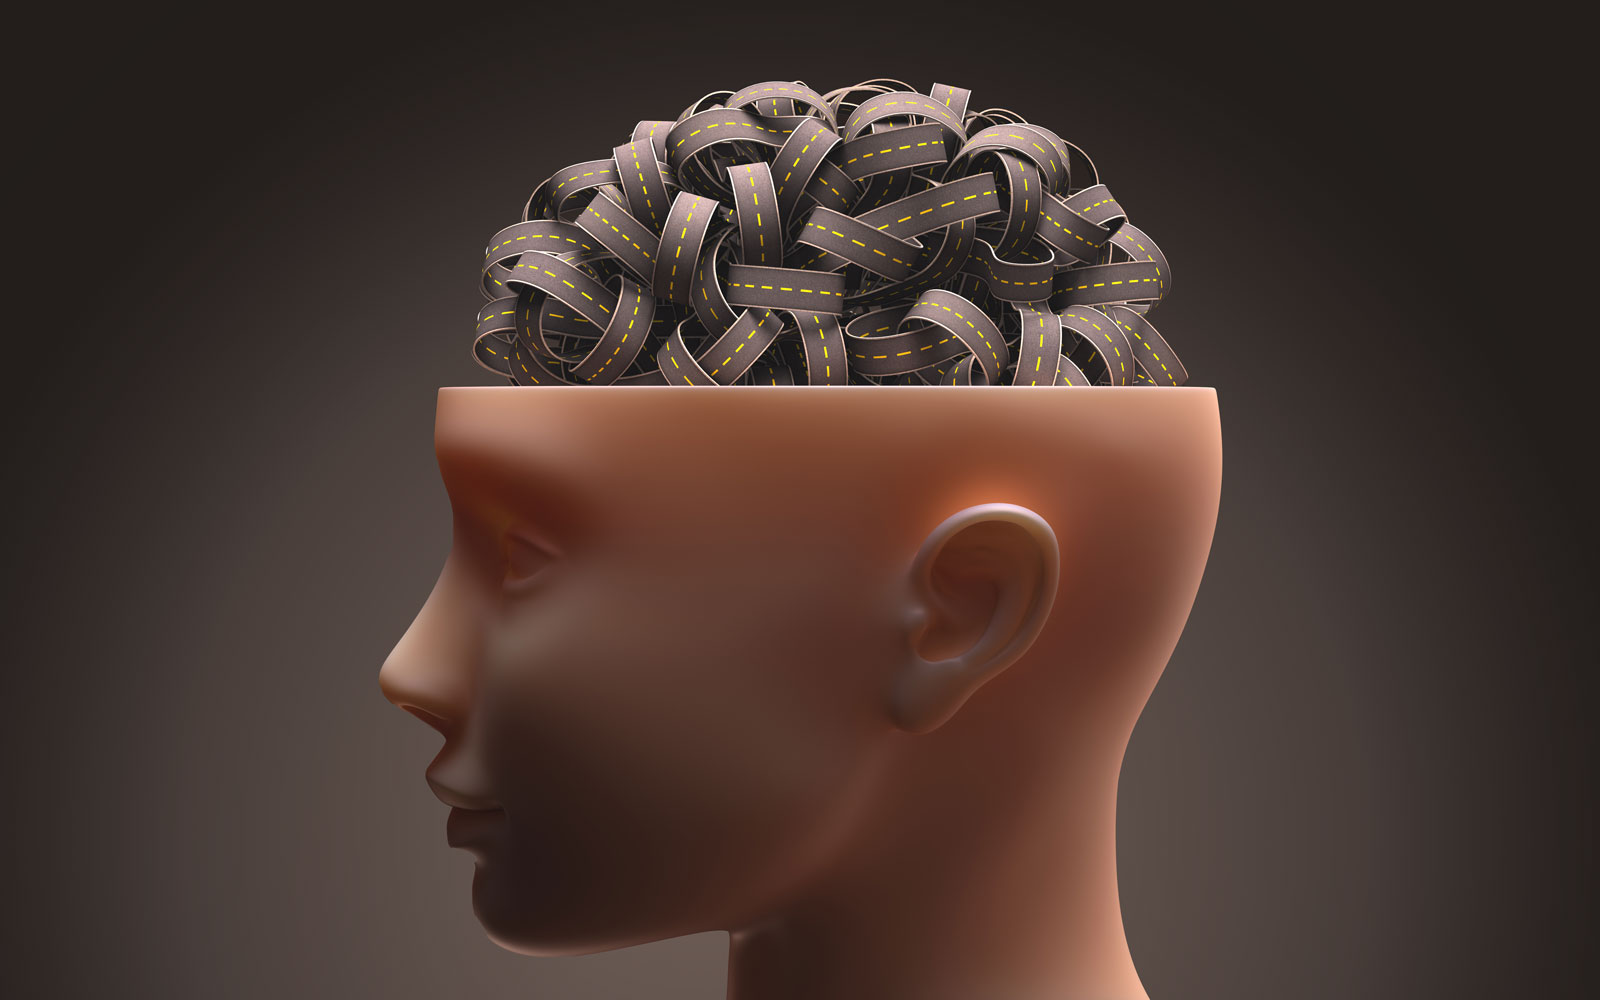 Ein abstrakter Kopf dessen Gehirn mit einem Straßenknoten visualisiert ist